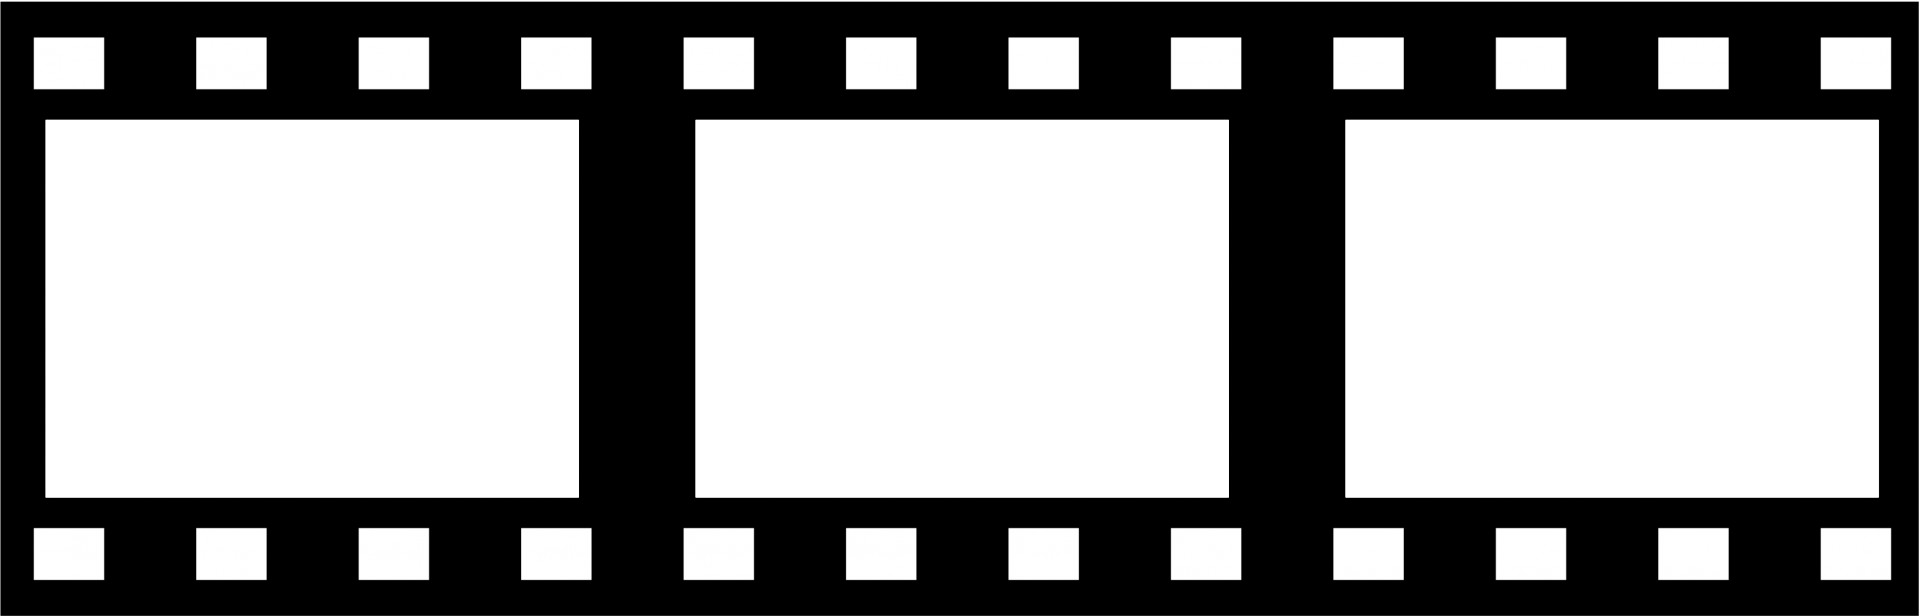 Arquivo de imagem PNG de filmes